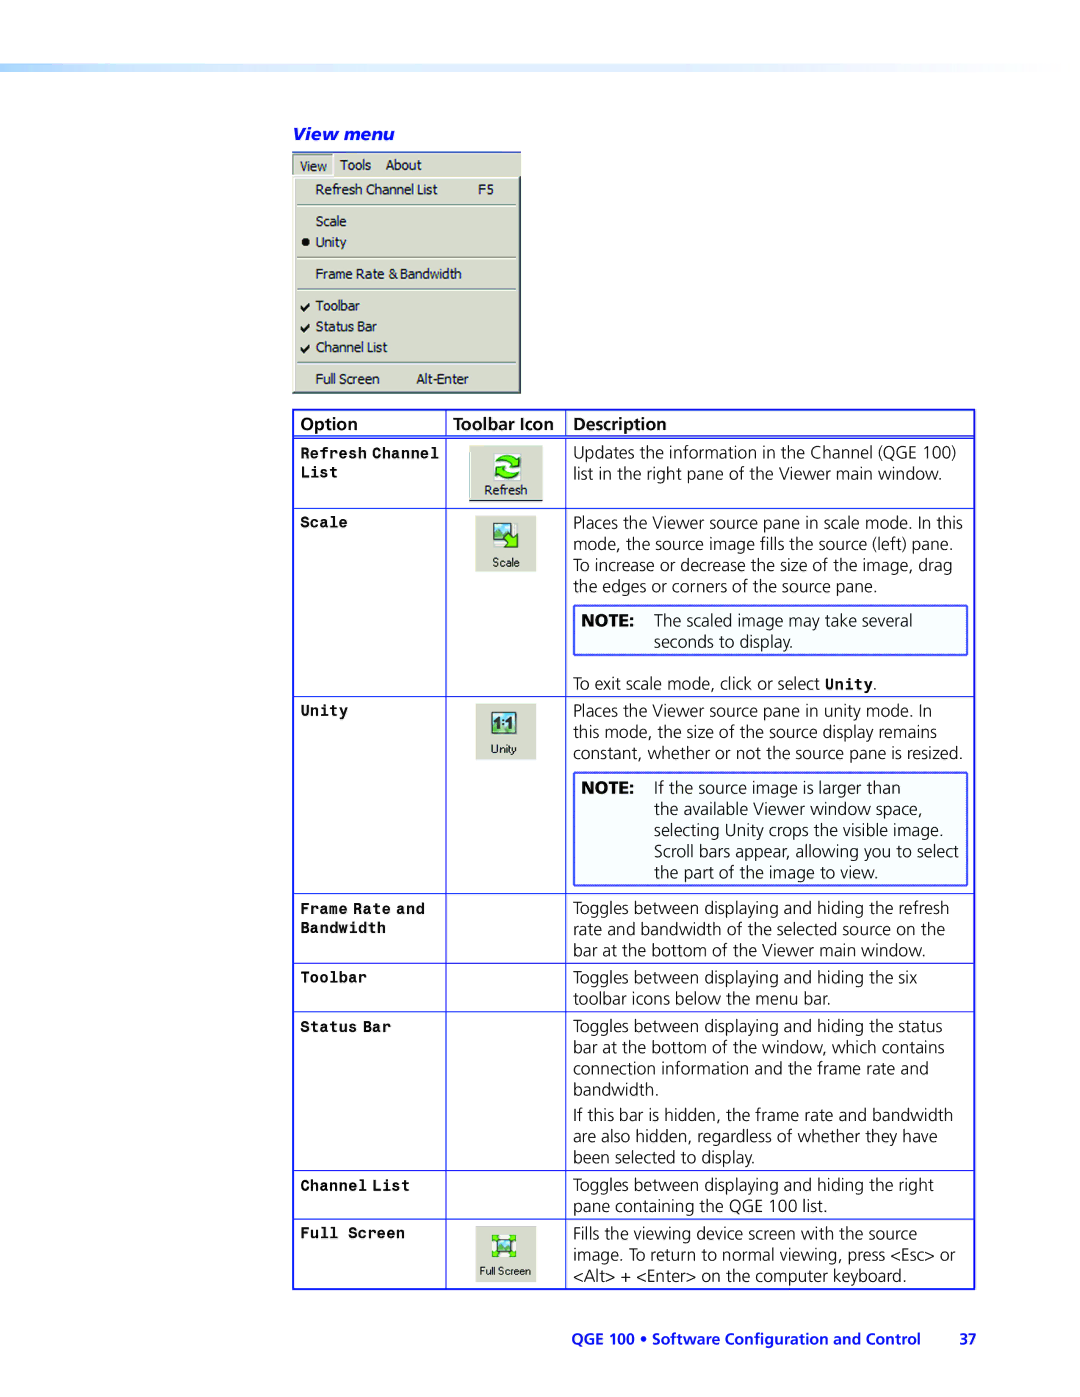 Extron electronic QGE 100 manual View menu 